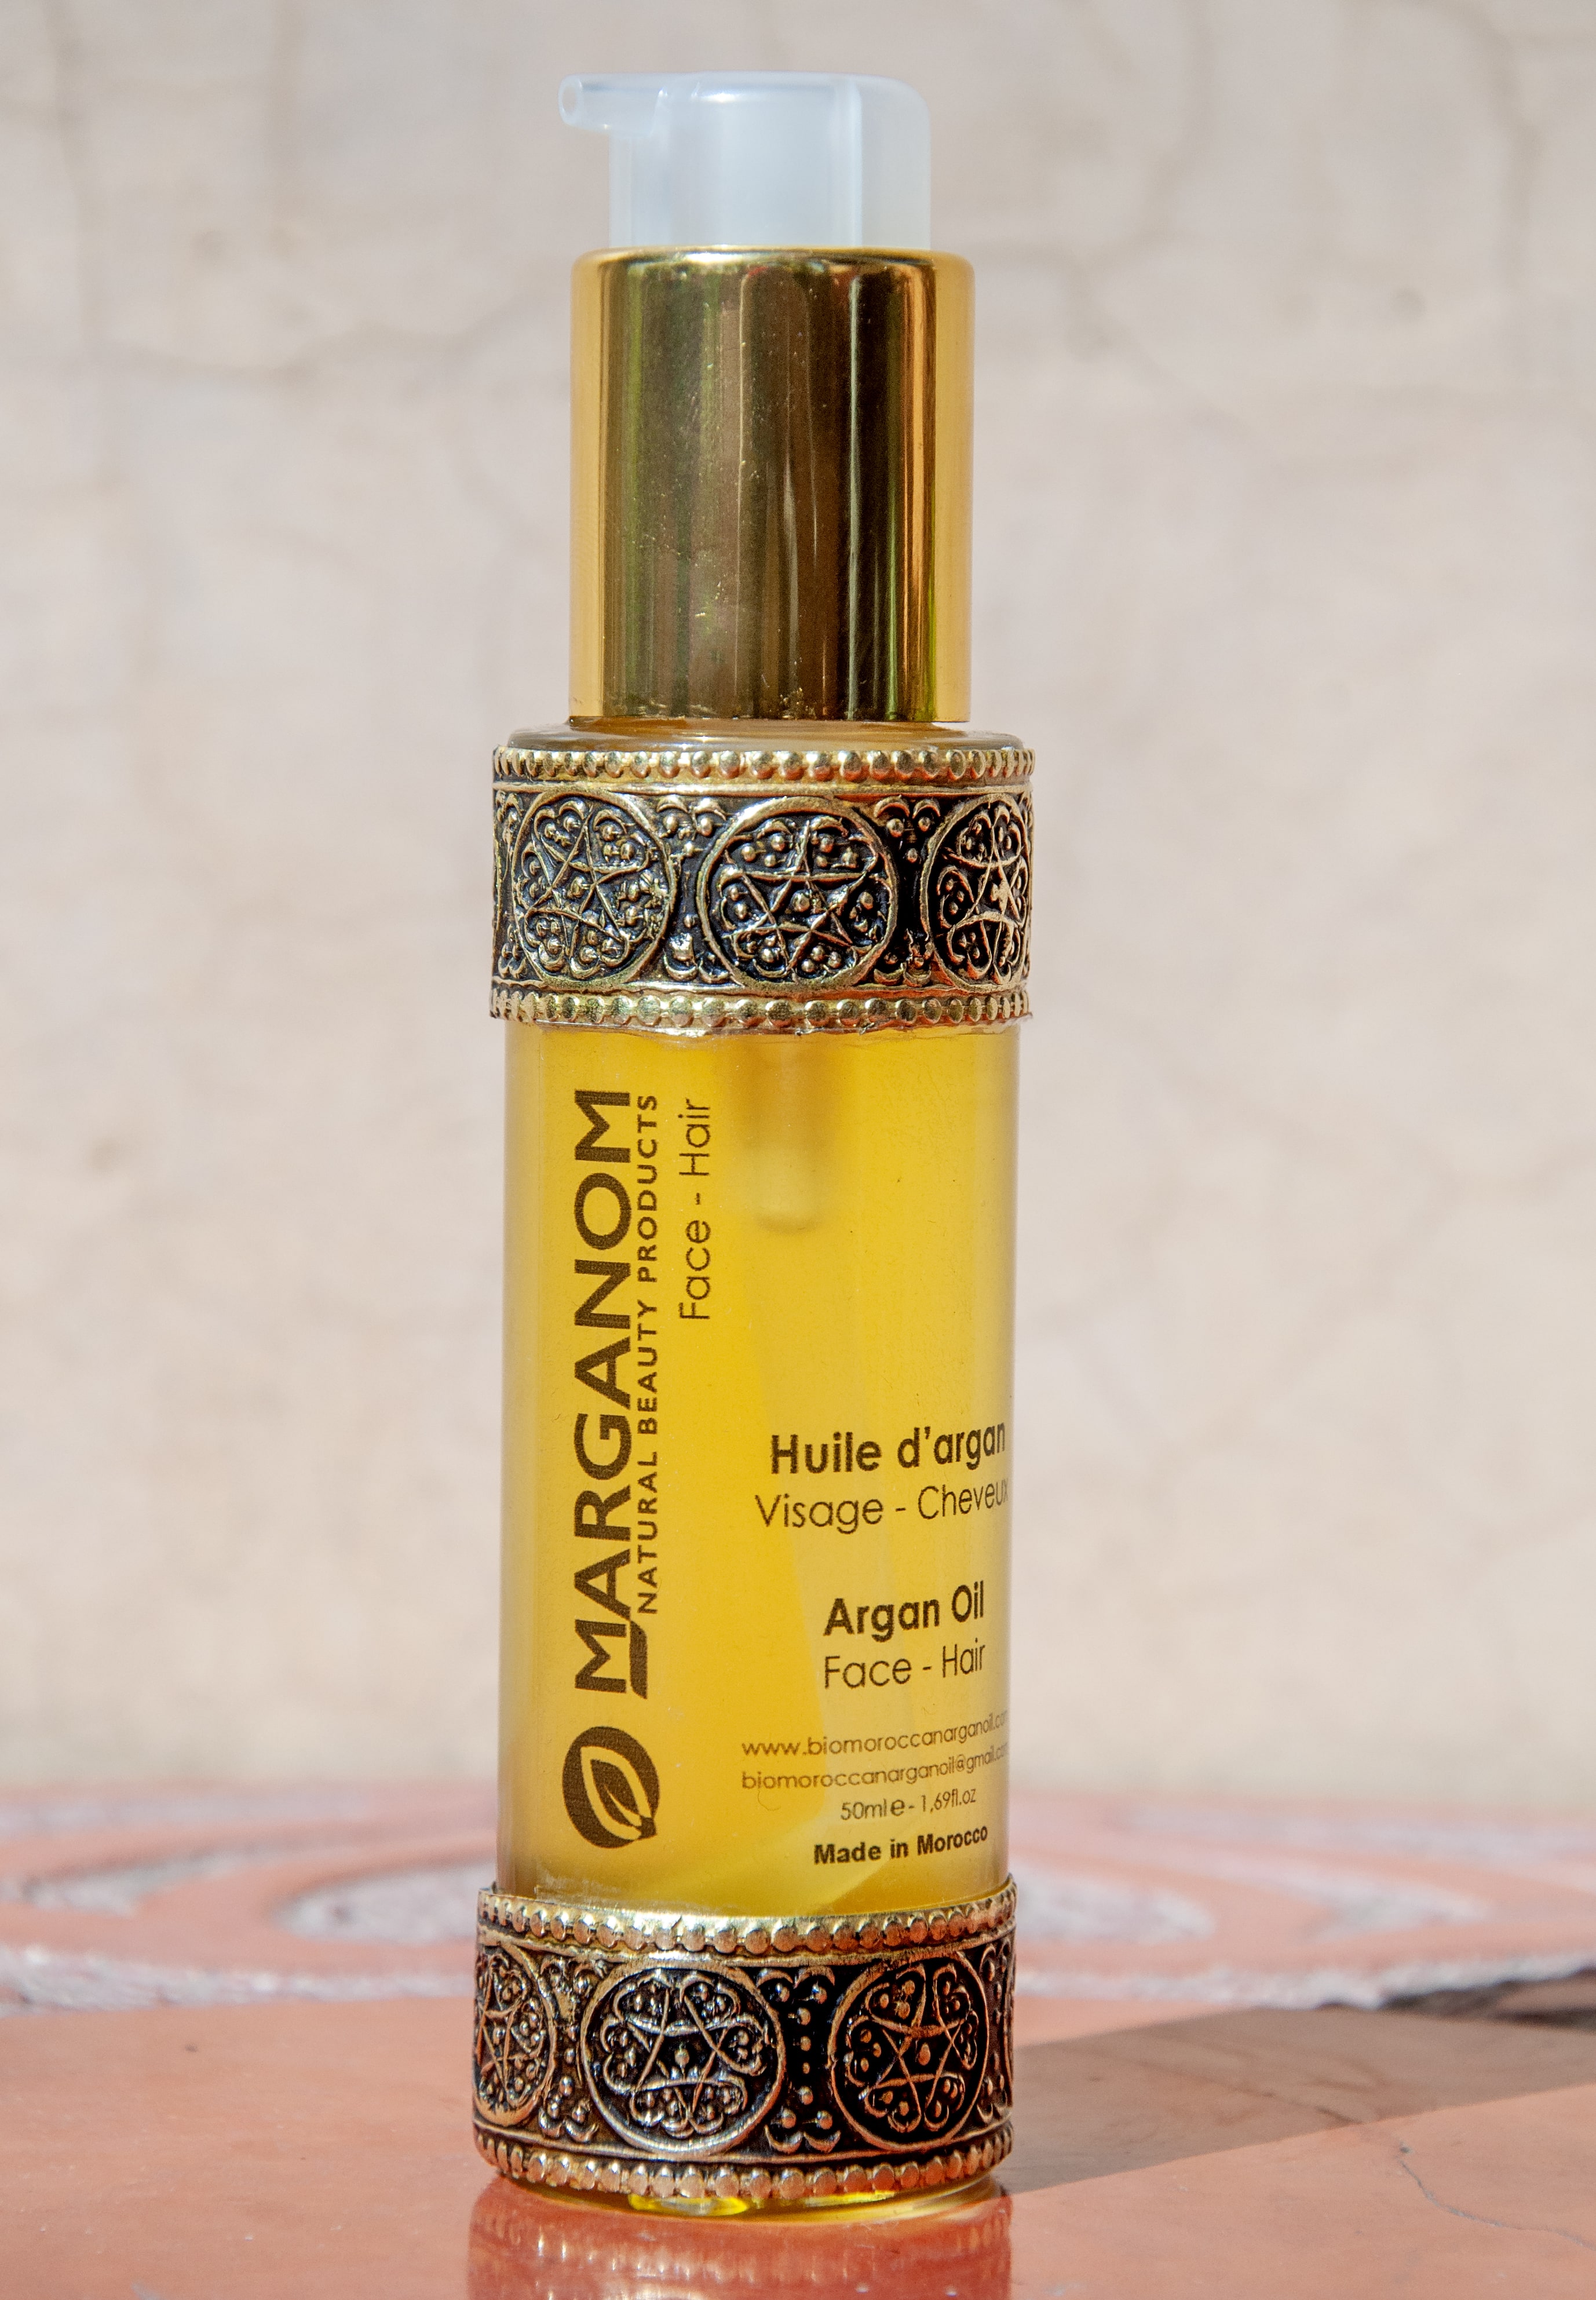 Moroccan bio argan oil